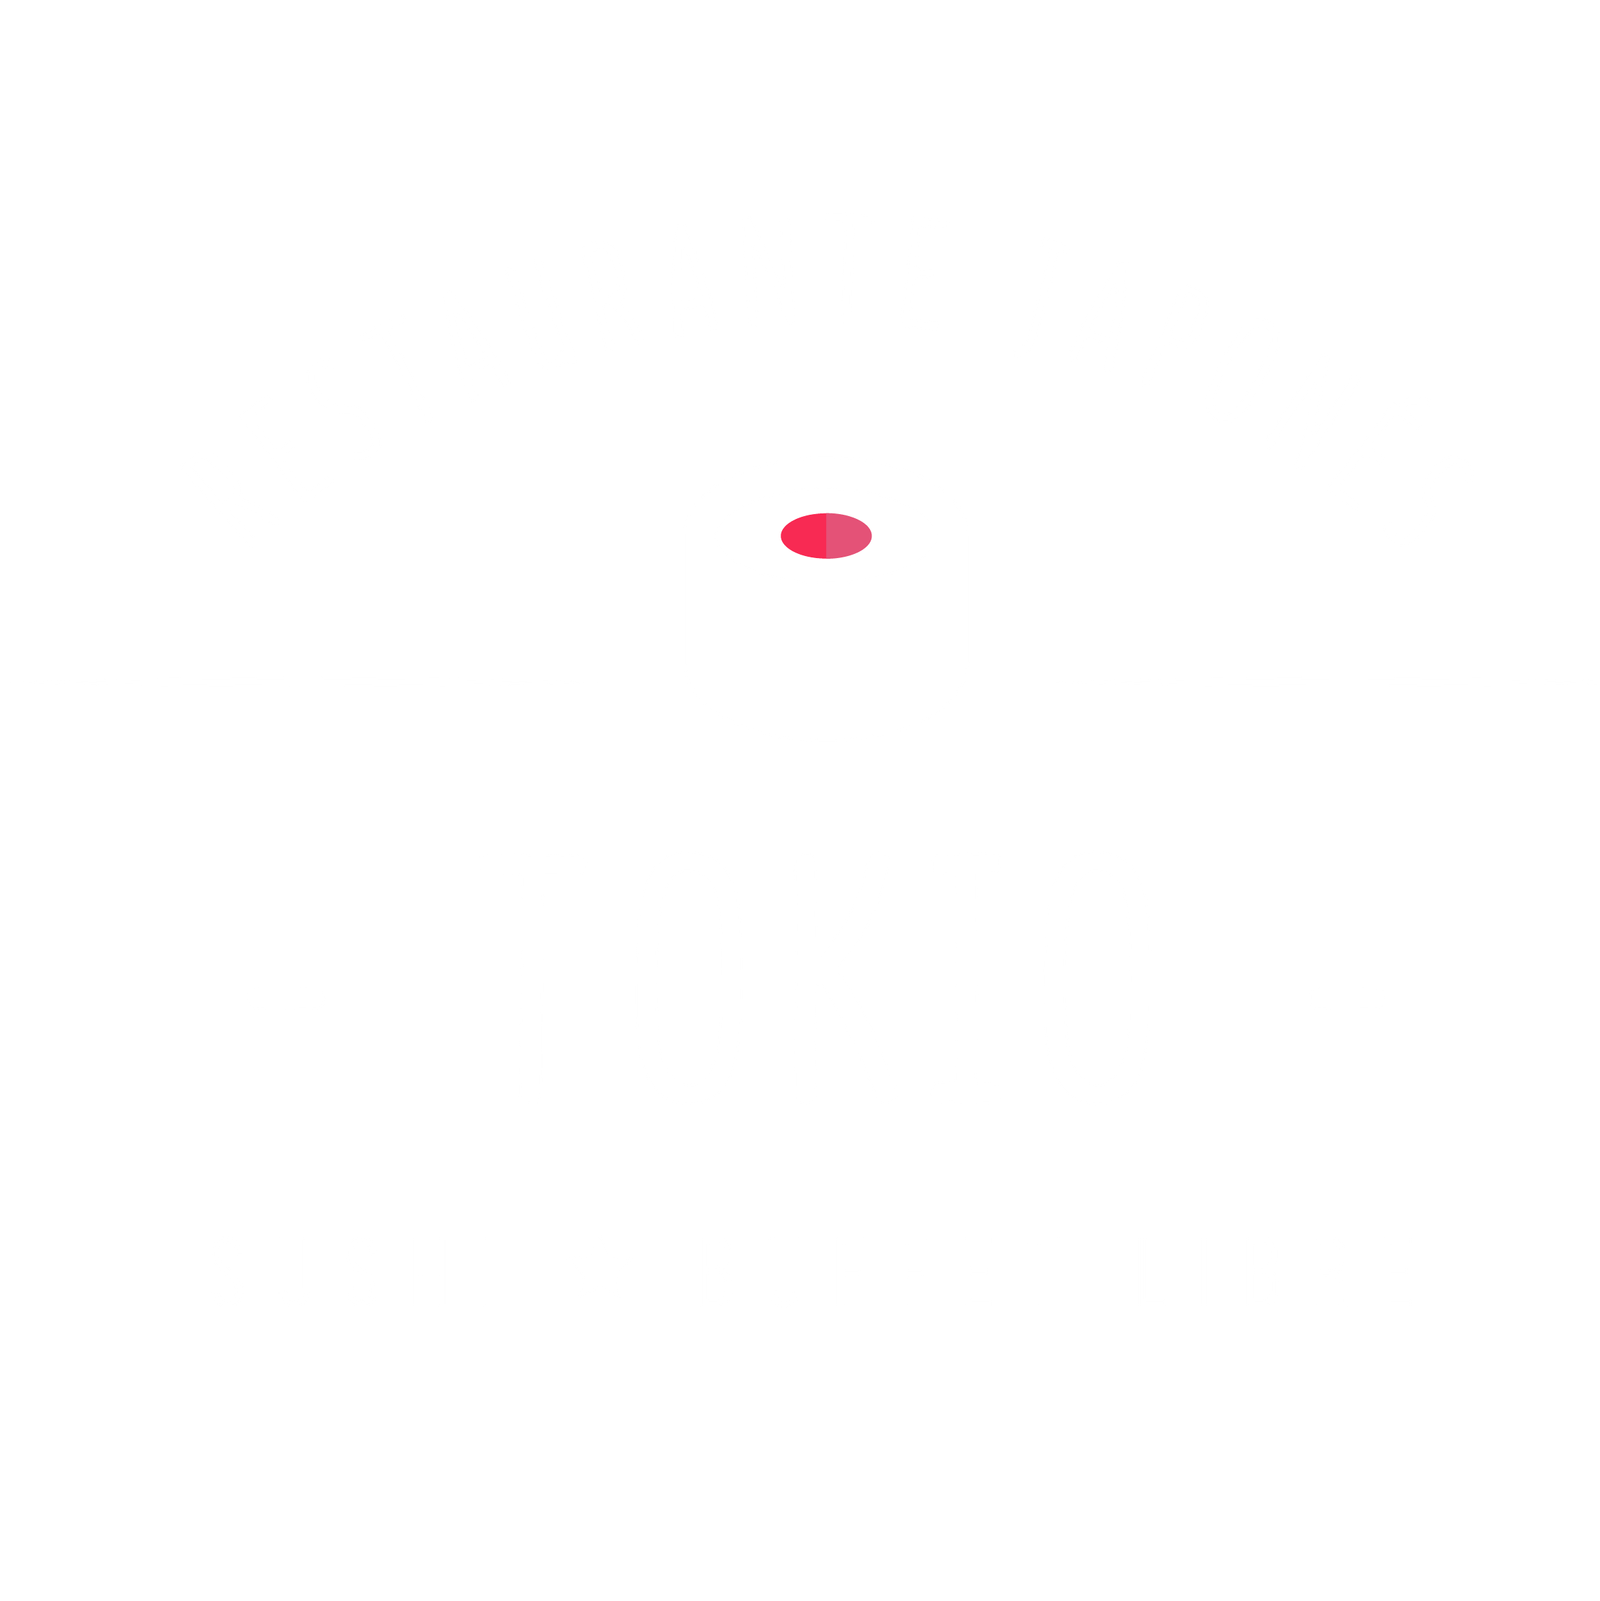 Restaurante Tokio en Pamplona, buffet giratorio, carta de excelente calidad